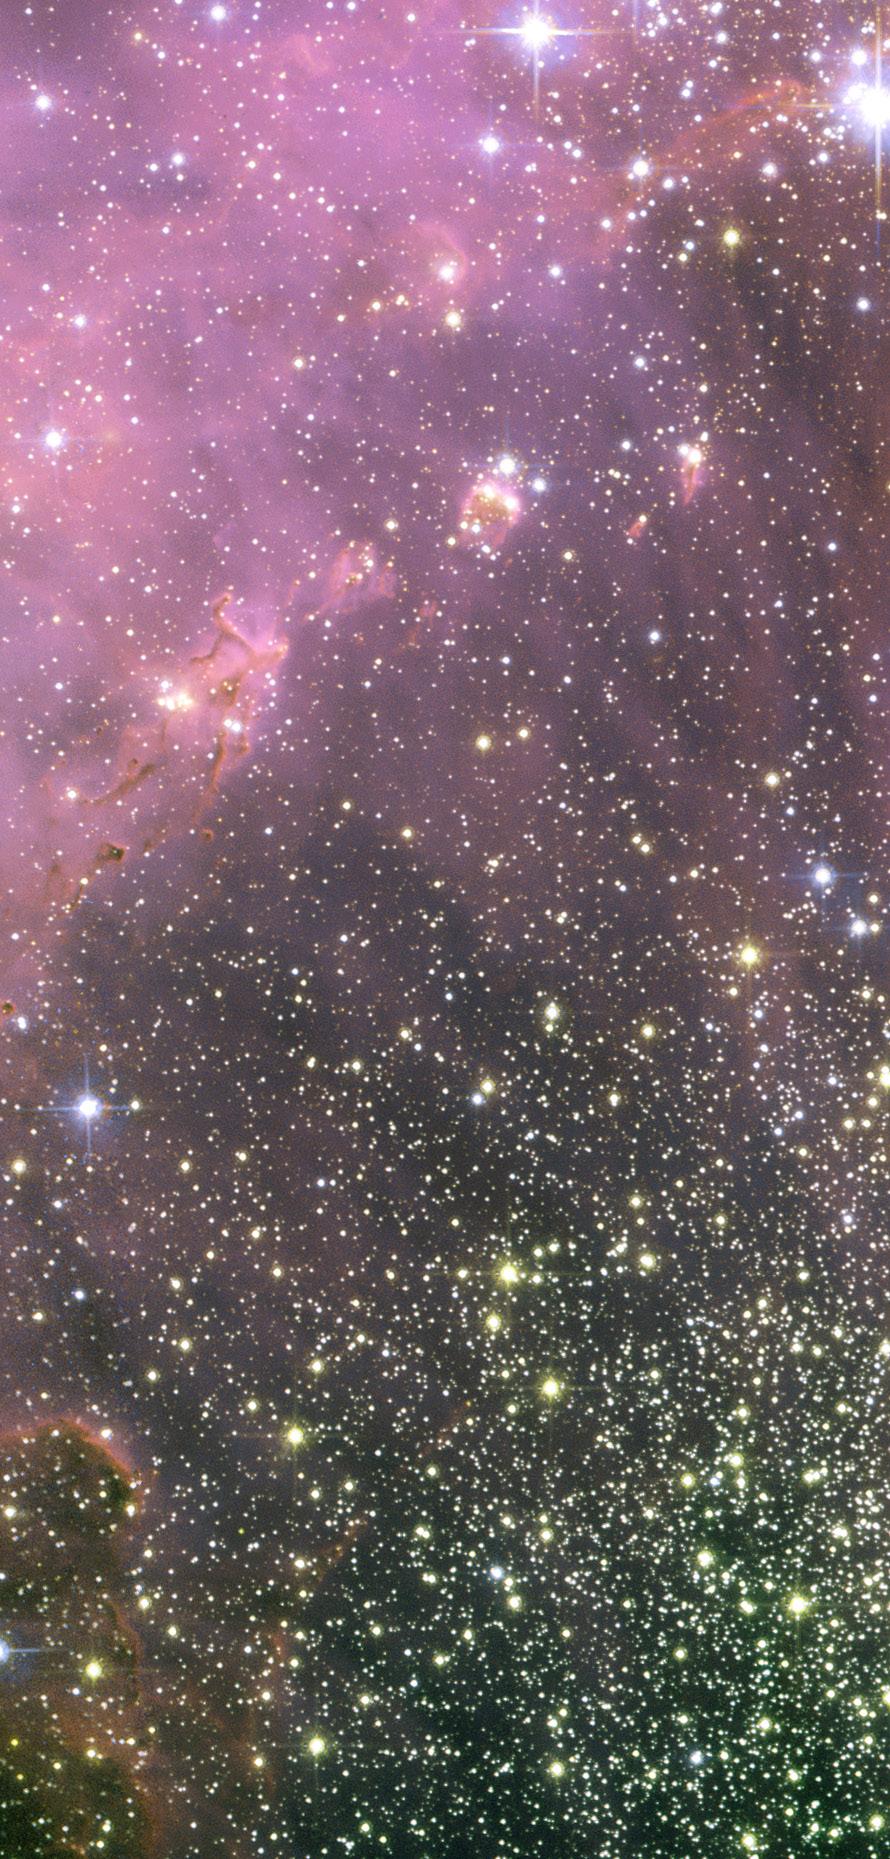 NGC 346 NASA ESA y A Nota (STScVESA) TELESCOPIO MAGALLANES GIGA Espejo VLT (Very Large Telescope) Observatorio Europeo Austral El Telescopio Magallanes Gigante pertenece a una nueva generación de